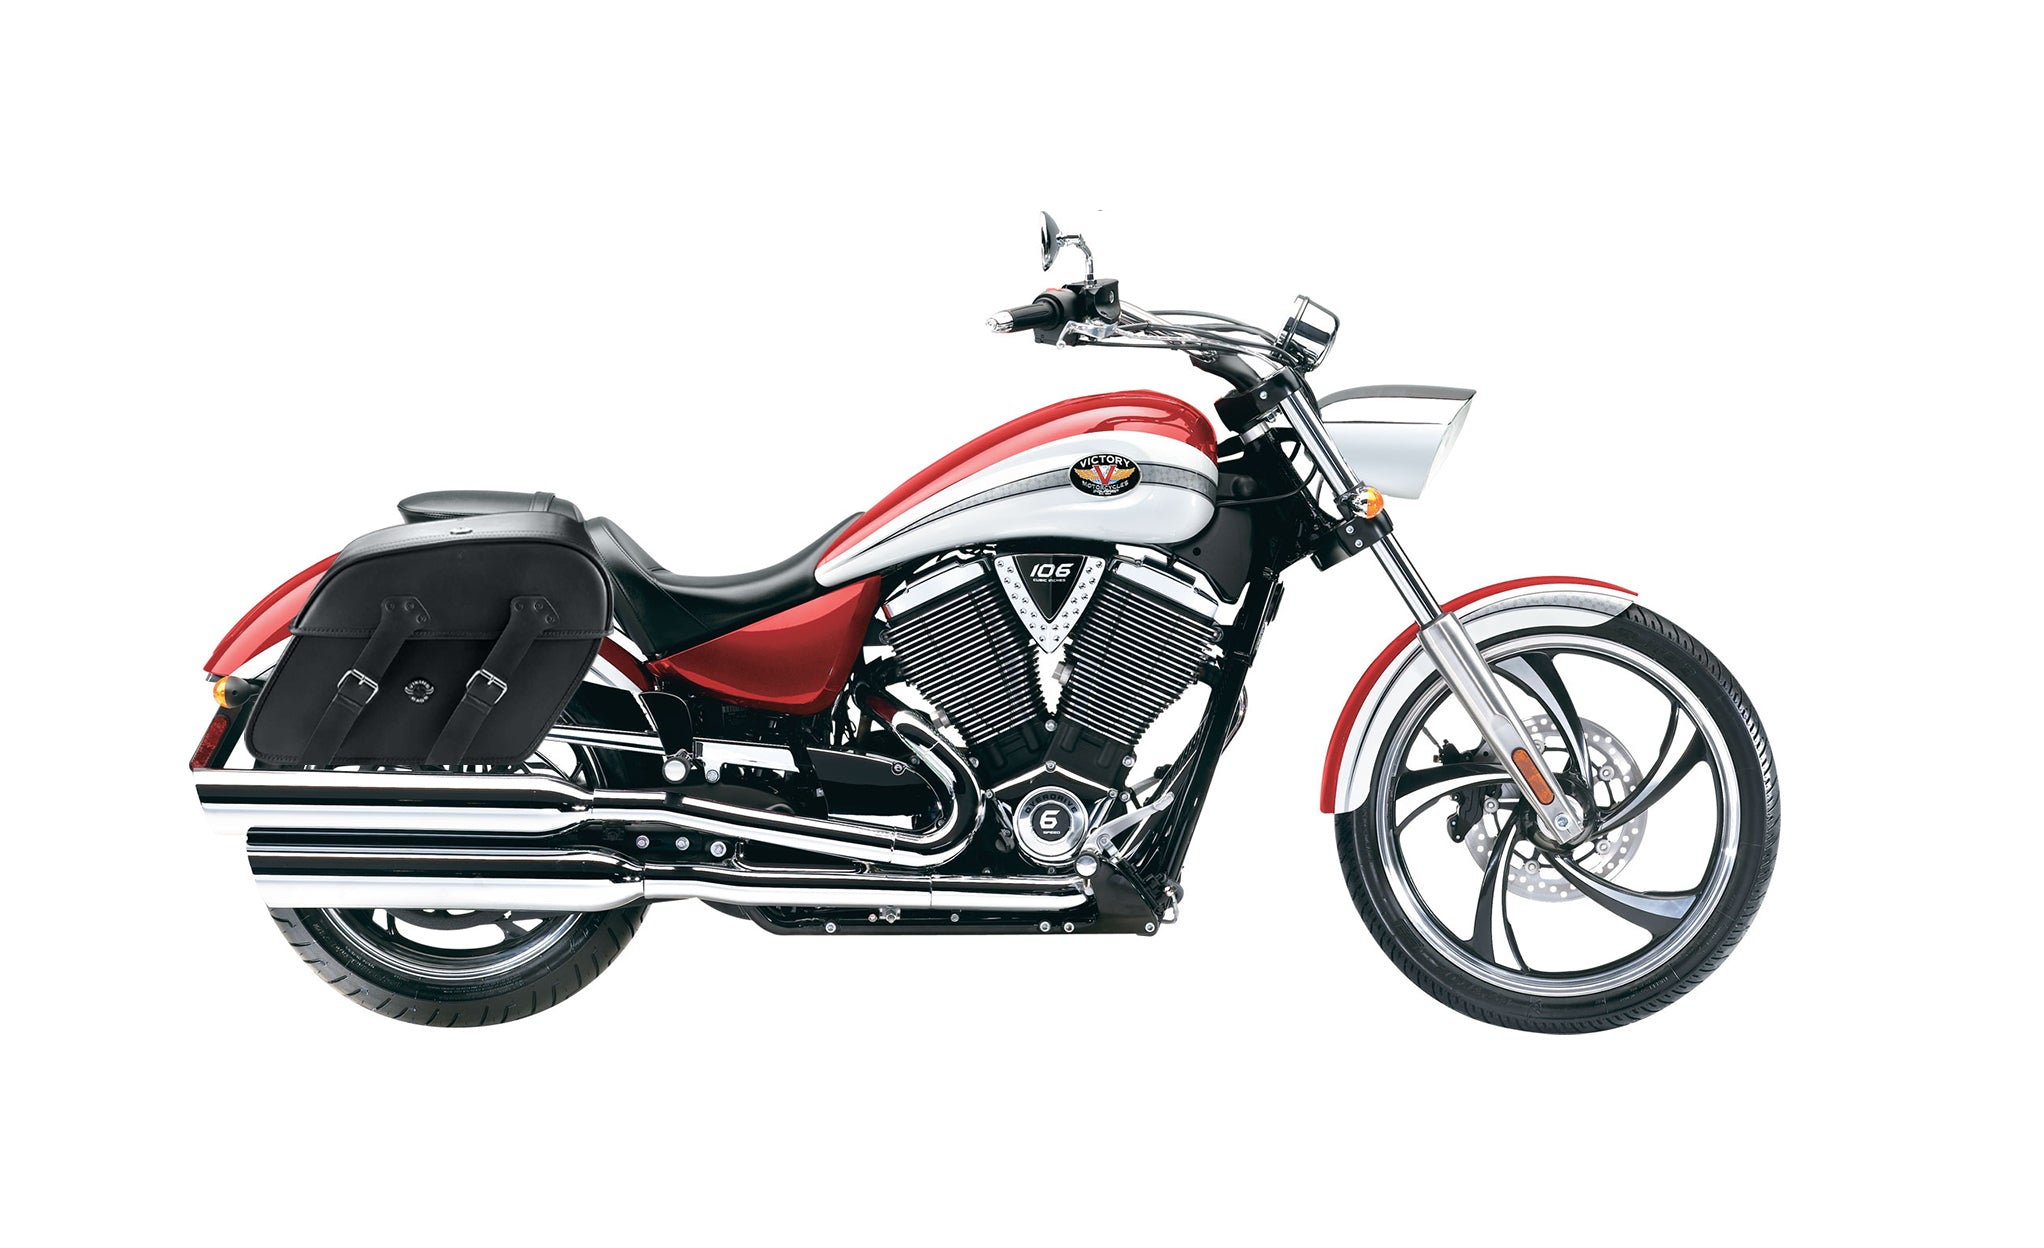 Viking Raven Large Victory Vegas Motorcycle Leather Saddlebags on Bike Photo @expand